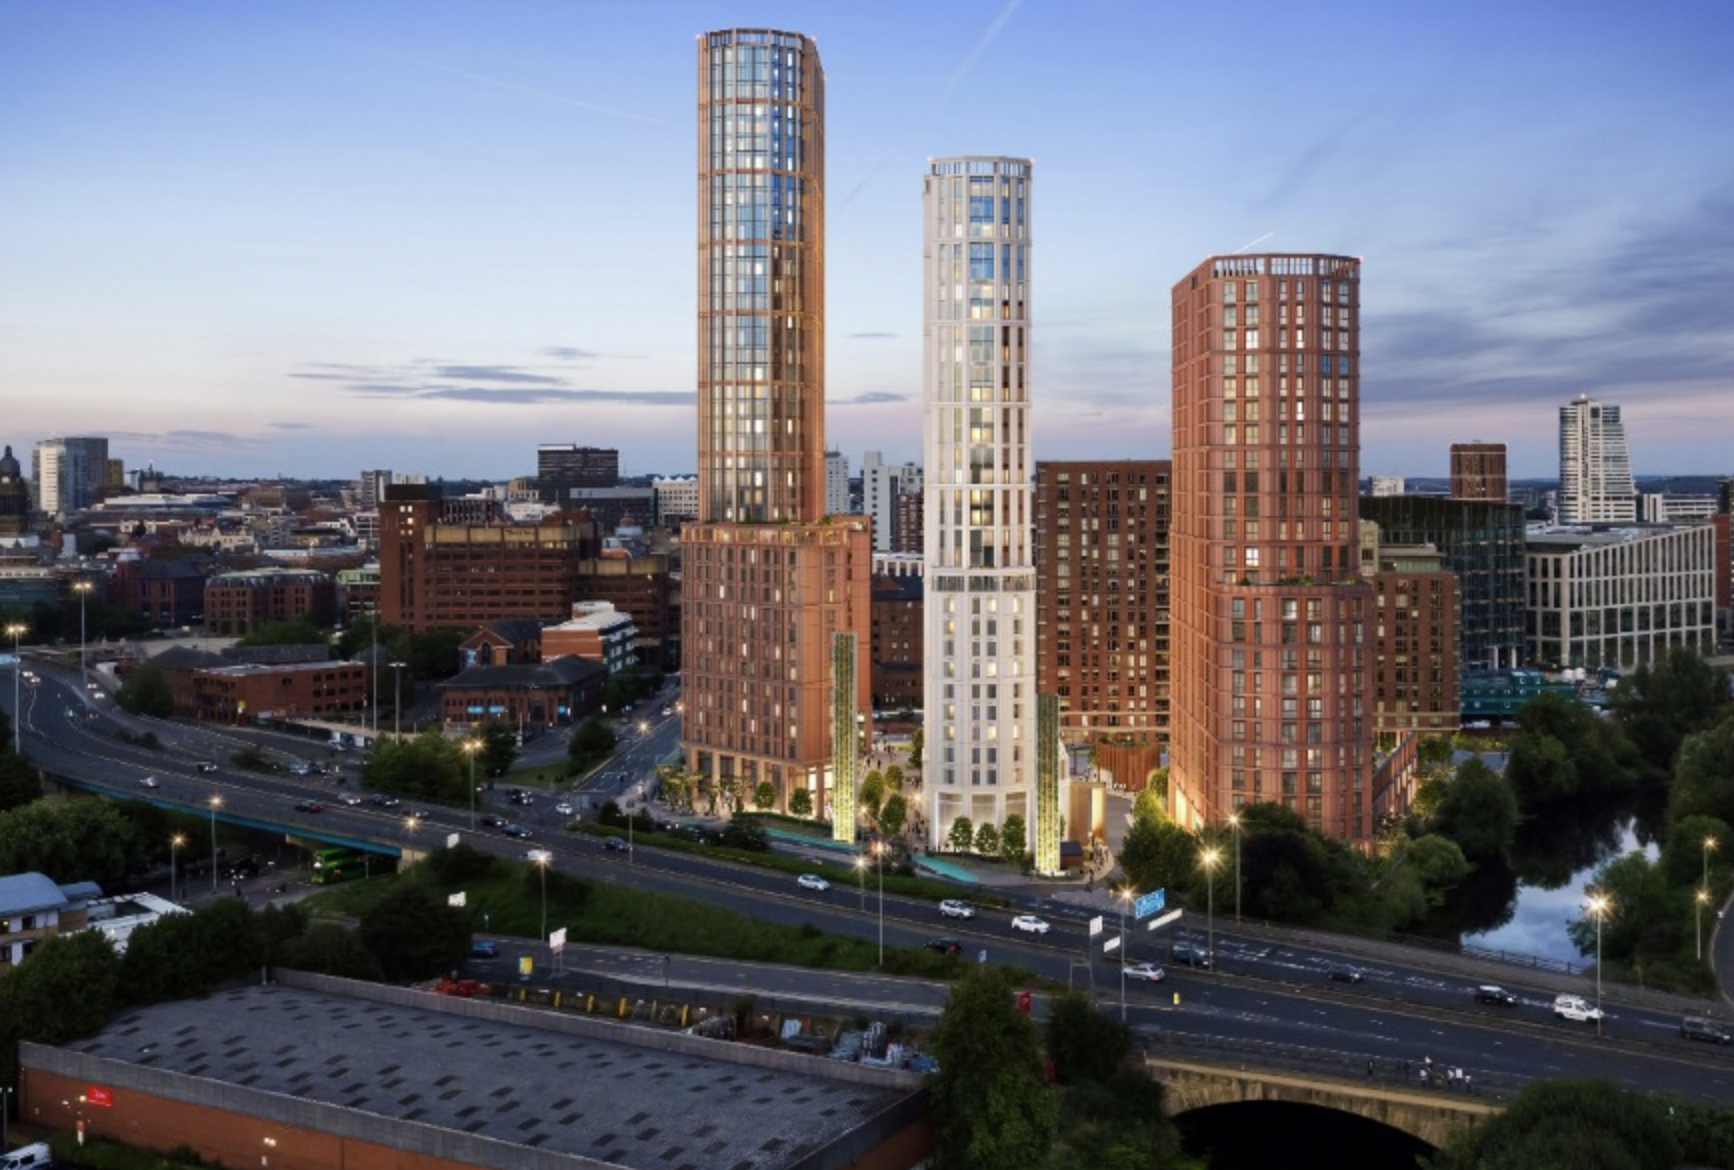 Urbanite to develop residential scheme in Leeds City Centre